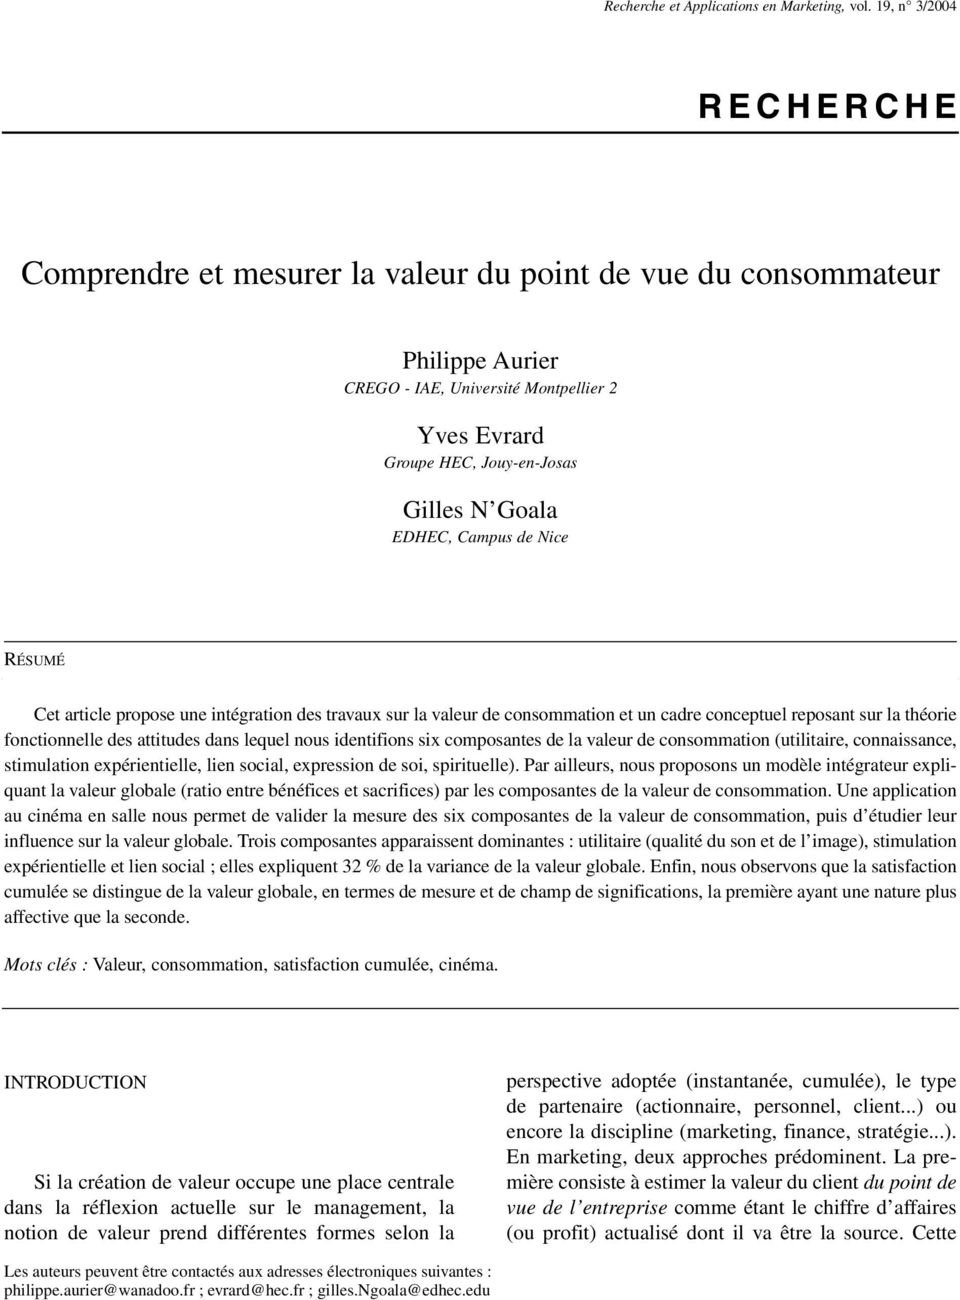 EDHEC, Campus de Nice RÉSUMÉ Cet article propose une intégration des travaux sur la valeur de consommation et un cadre conceptuel reposant sur la théorie fonctionnelle des attitudes dans lequel nous